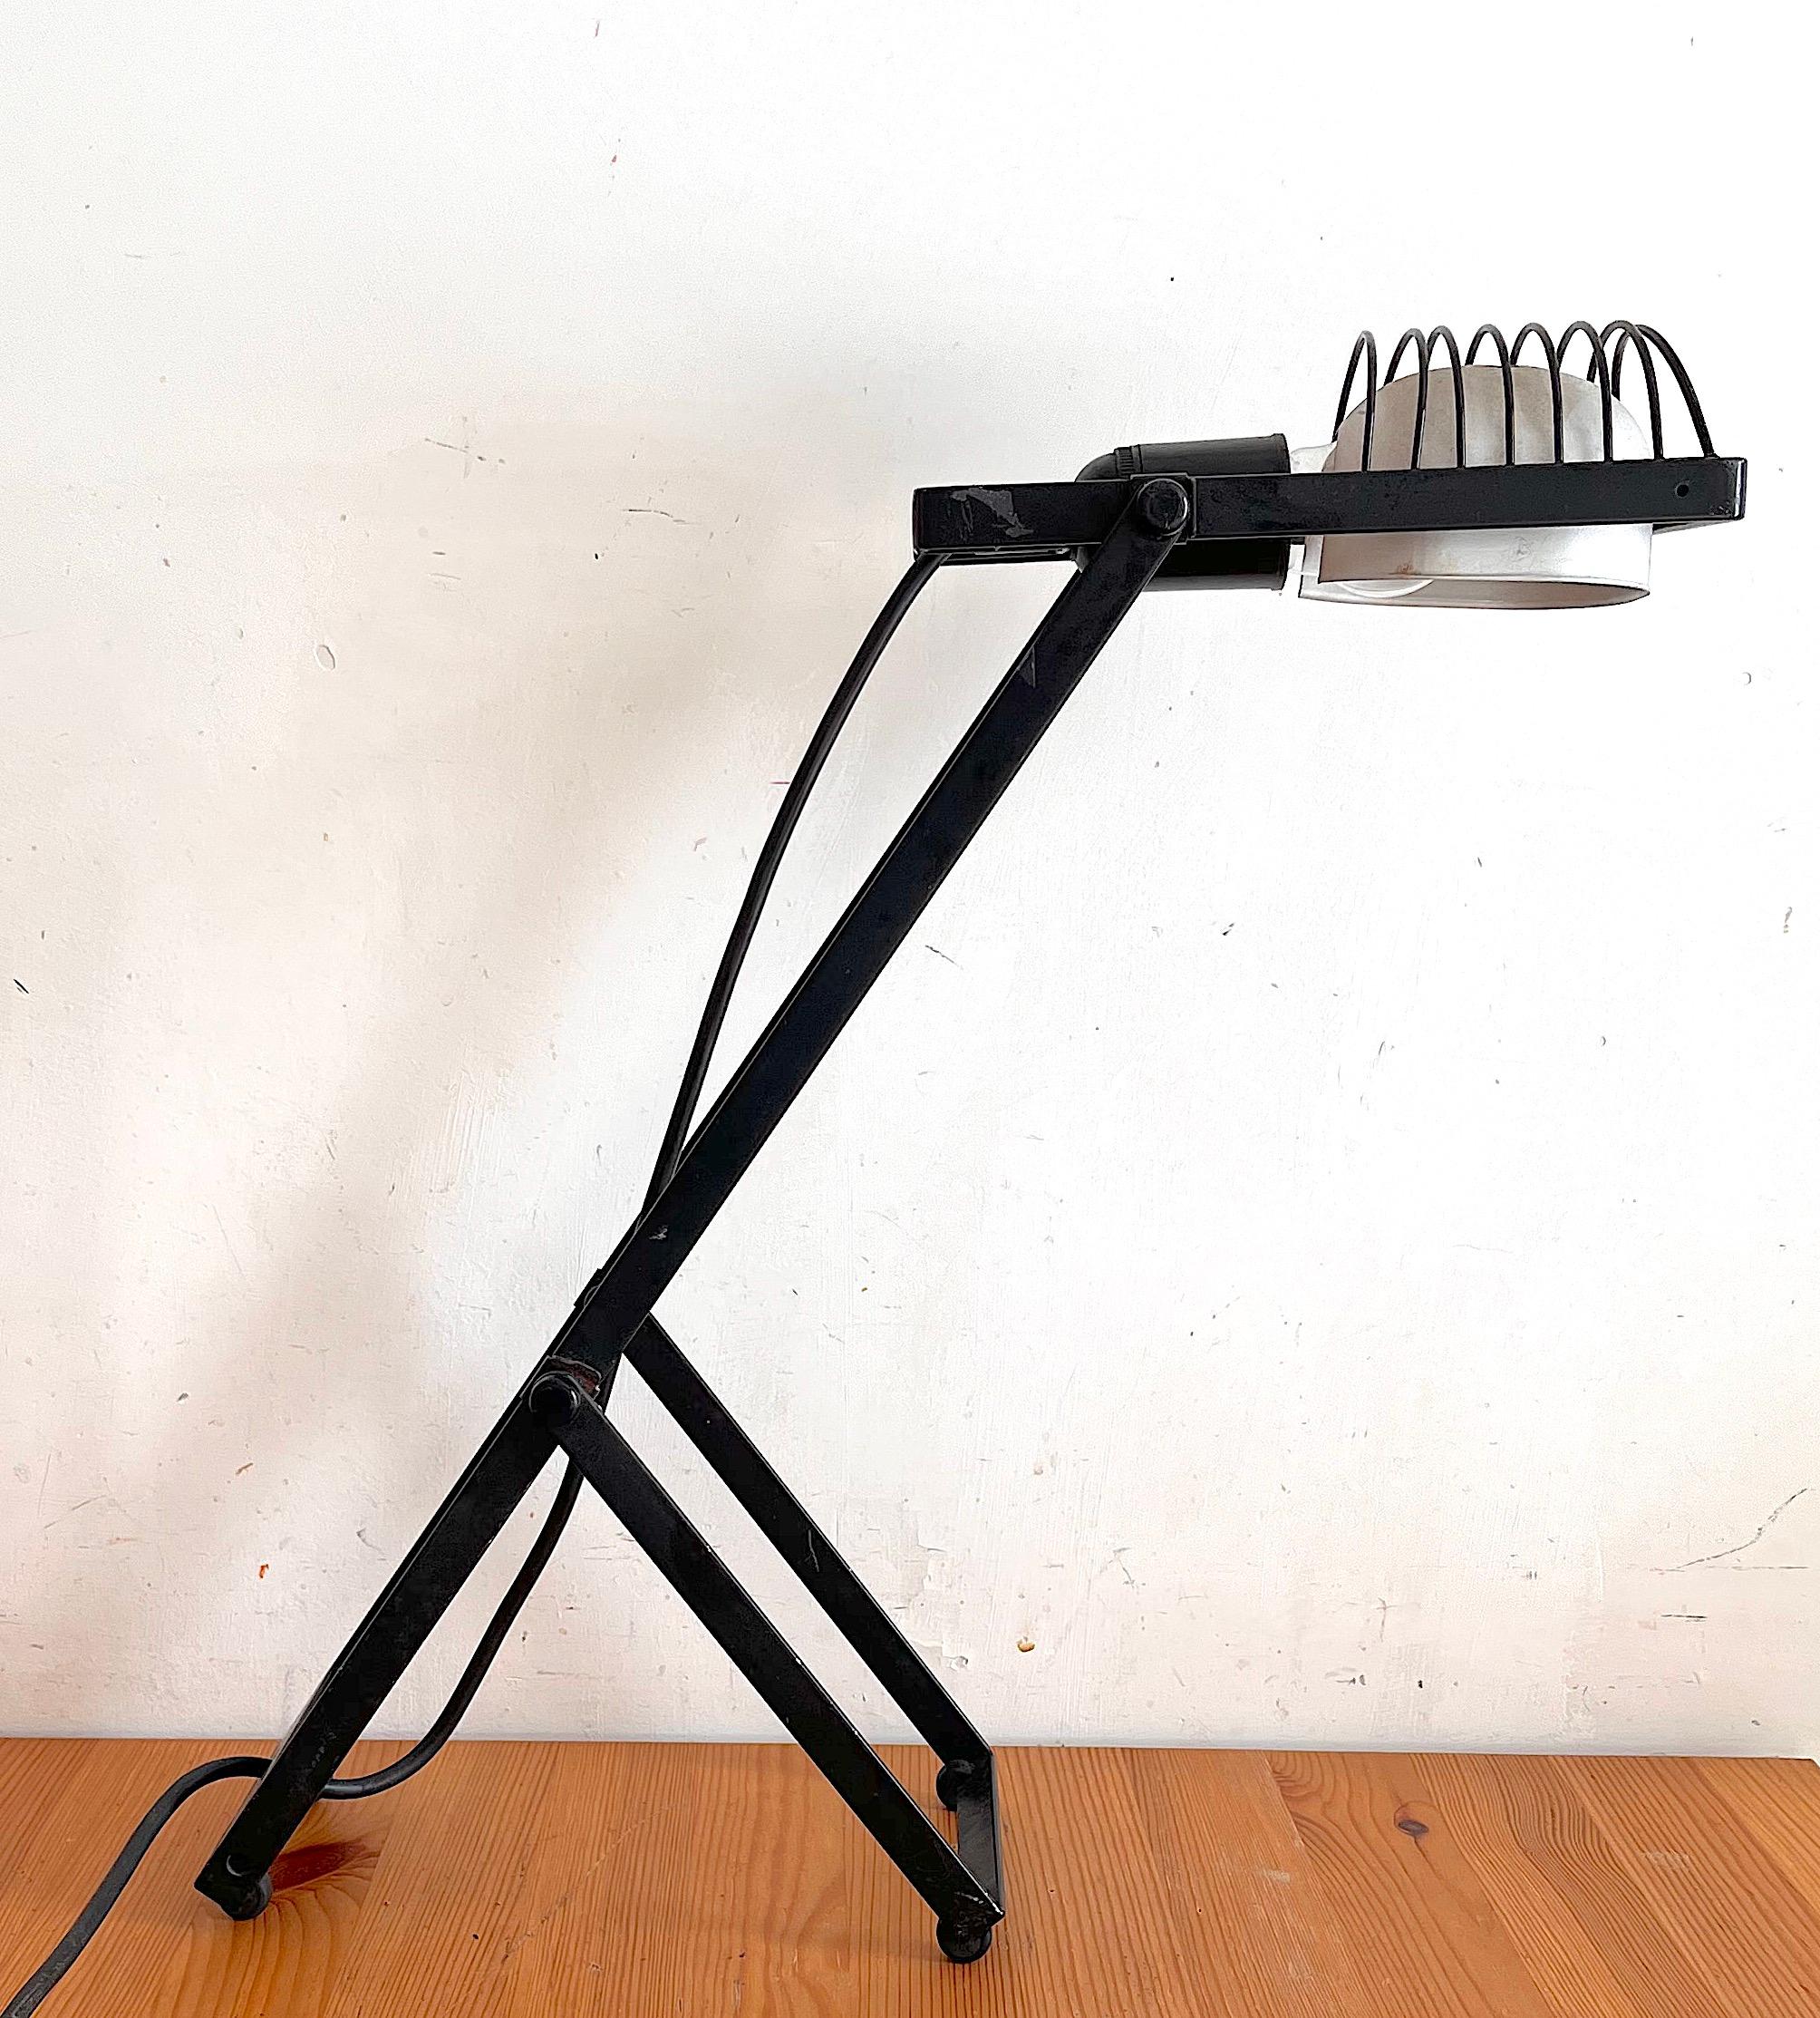 Lampes de table Sintesi conçues par Ernesto Gismondi, fondateur de la société italienne de luminaires Artemide dans les années 1970. L'interrupteur marche/arrêt est situé sur le câble. Cette lampe a un abat-jour en aluminium. L'état des lampes est